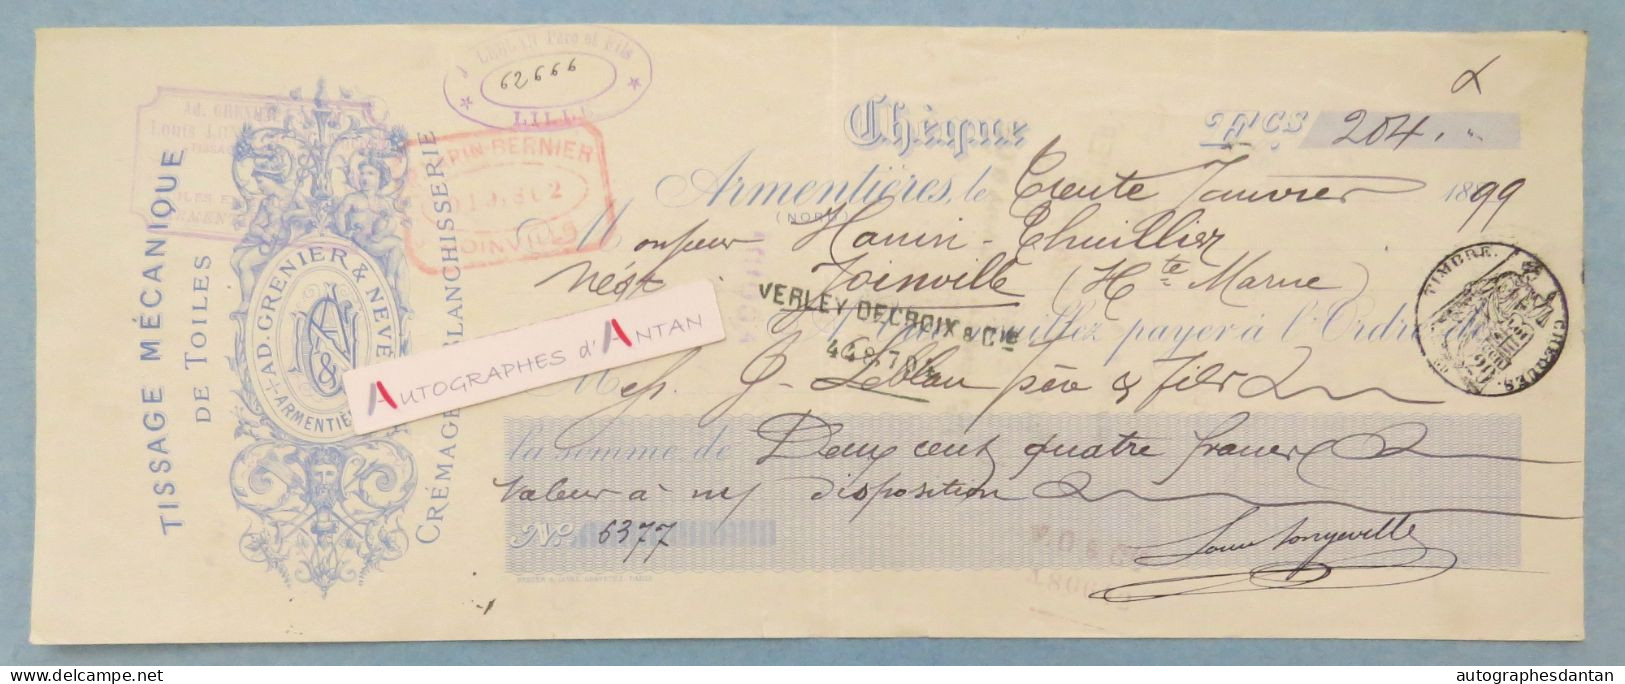 ● Armentières 1899 Beau Chèque Ad Grenier & Neveu Tissage Mécanique De Toile - Hanin Thuillier à Joinville - Rare Check - Cheques En Traveller's Cheques